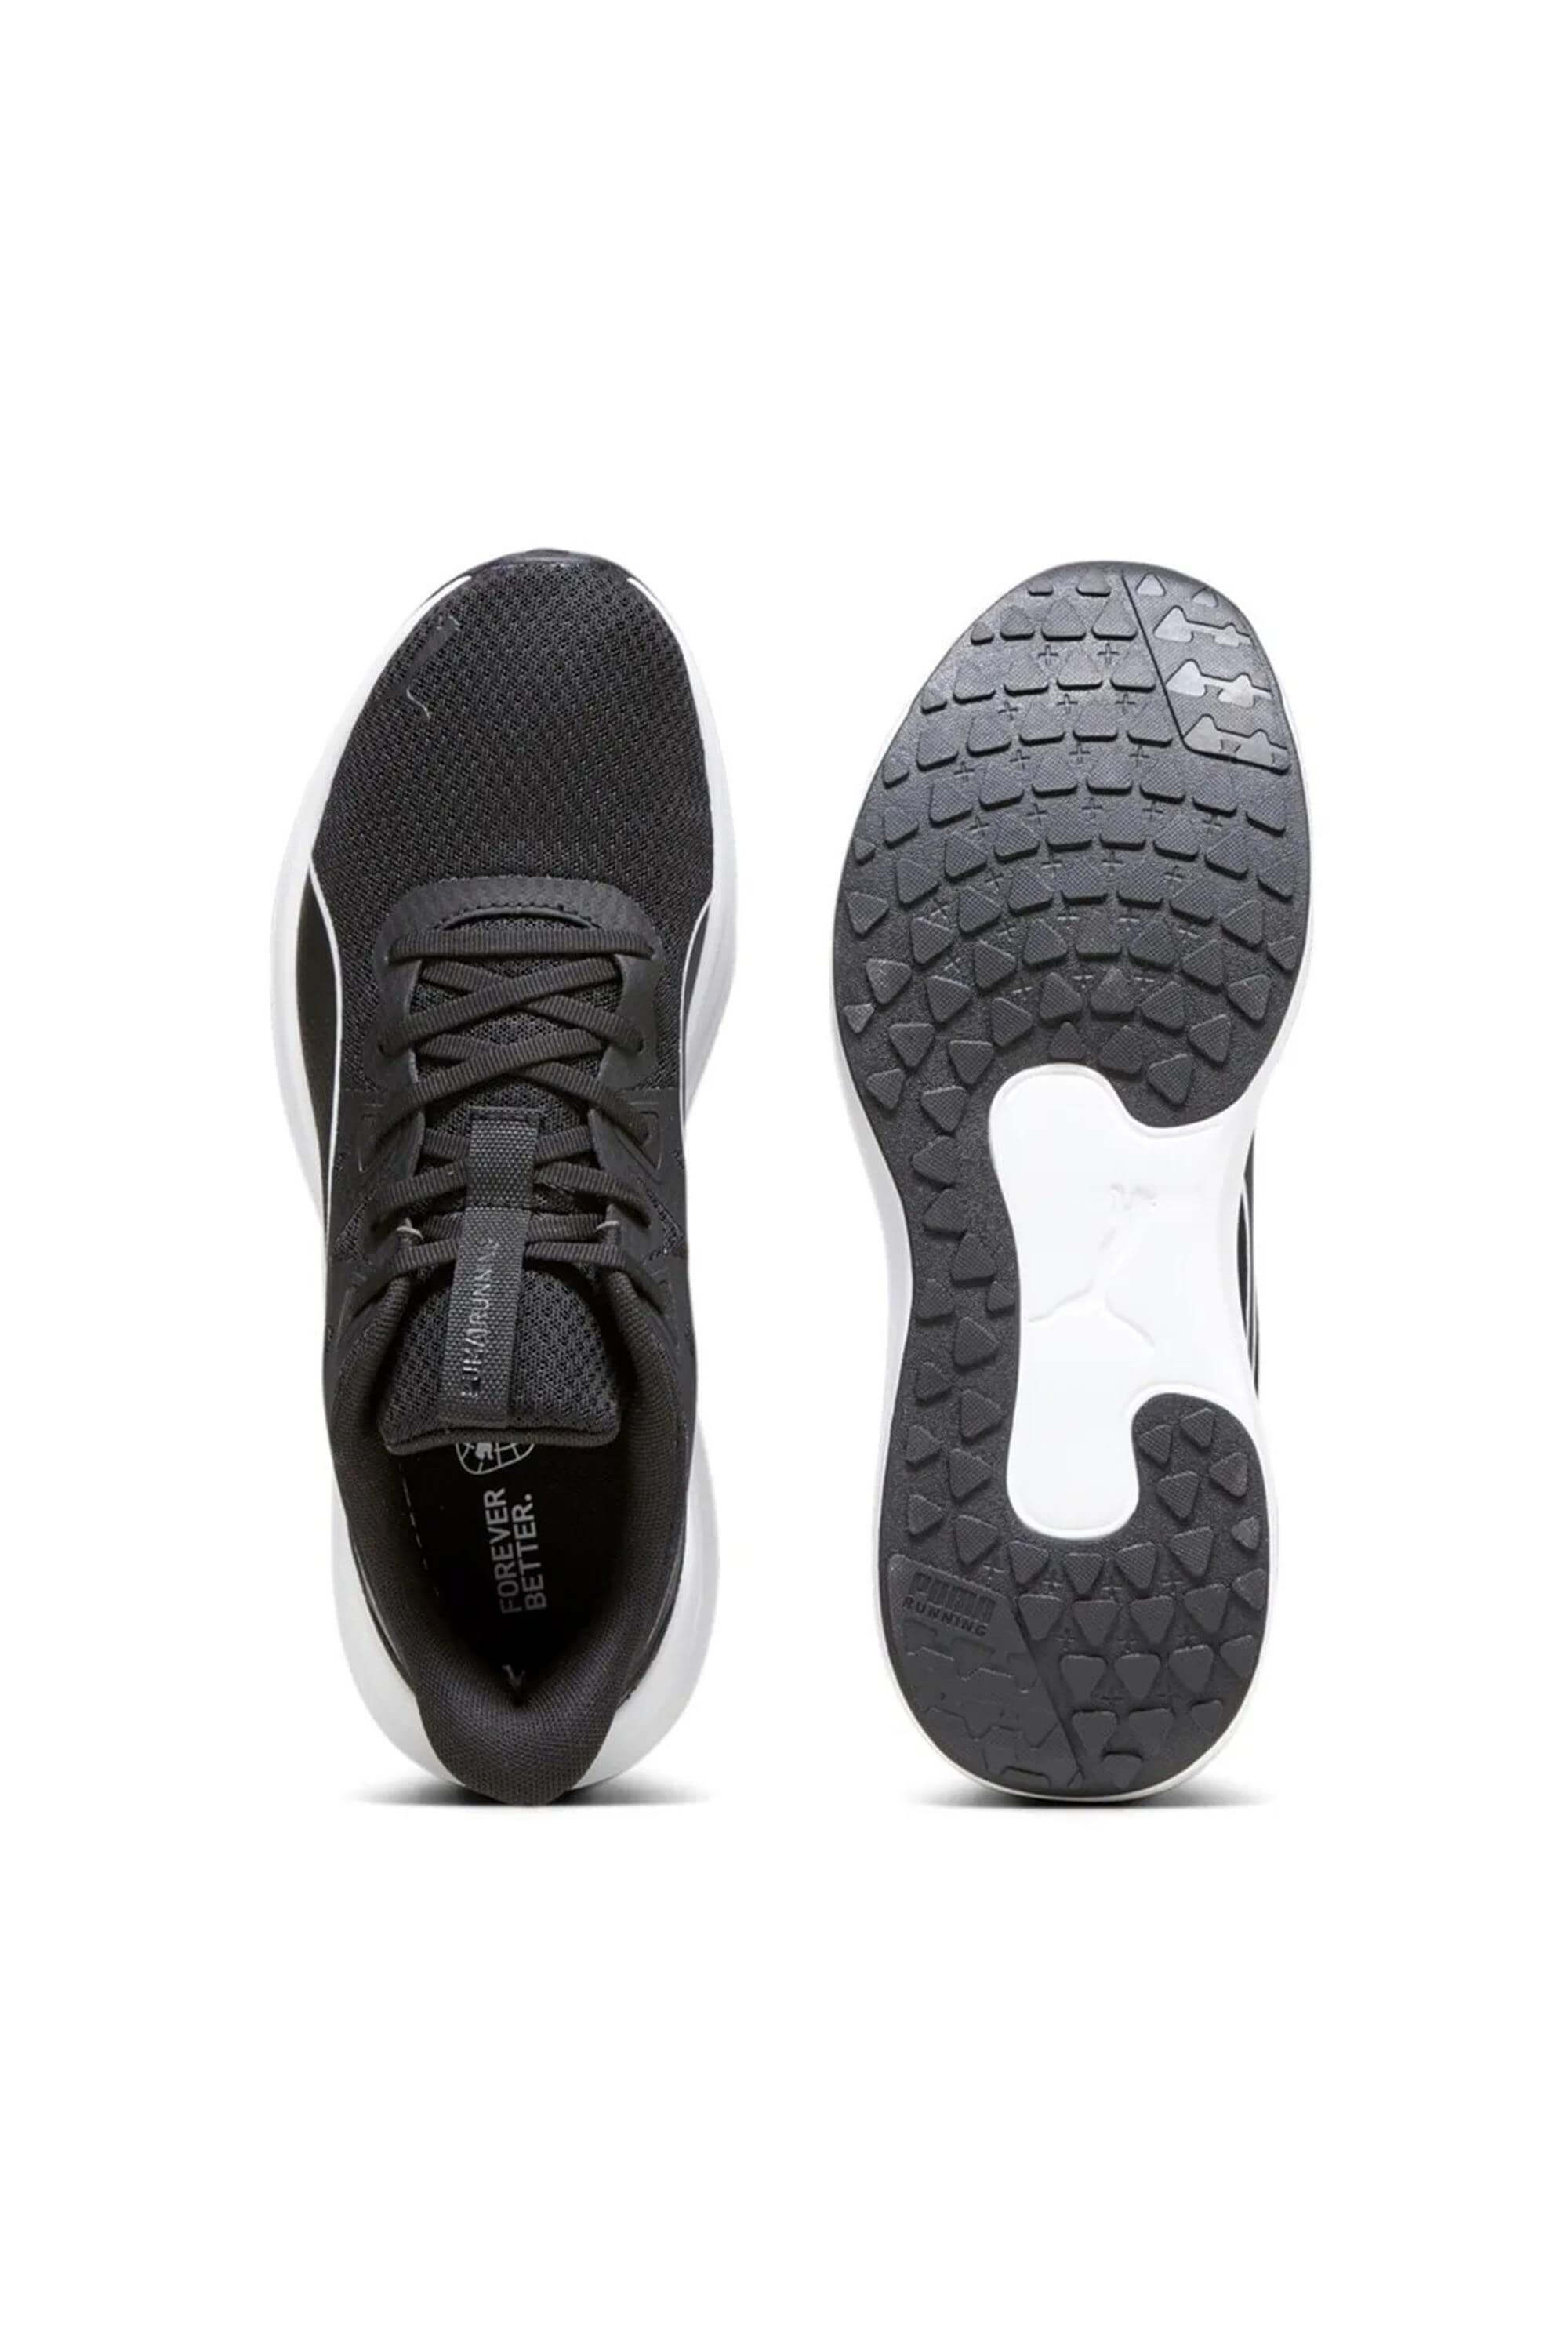 Puma 378768 Reflect Lite Black-Black-White Erkek Koşu Ayakkabısı